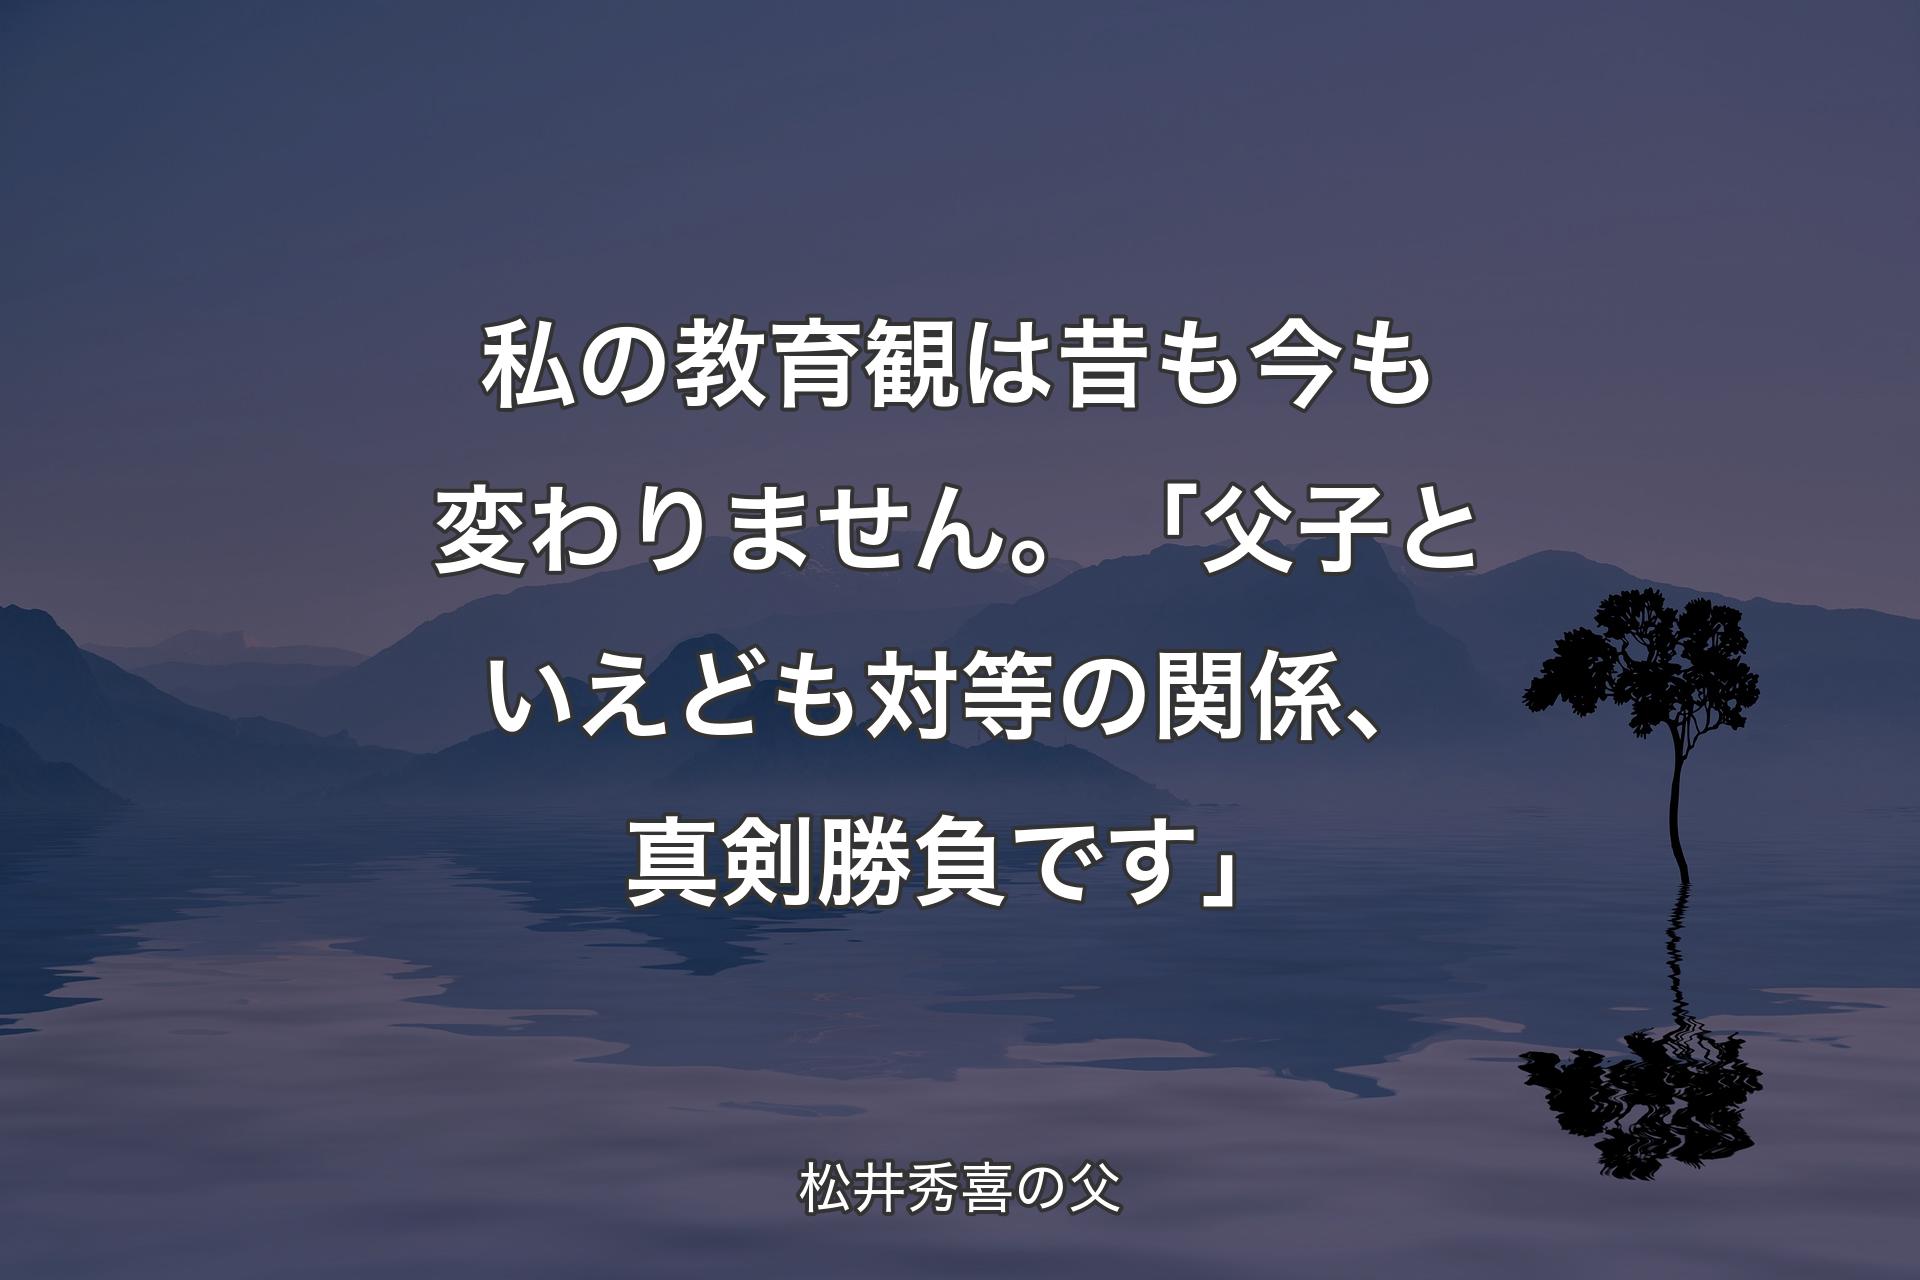 【背景4】私の教育観は昔も今も変わりません。「父子といえども対等の関係、真剣勝負です」 - 松井秀喜の父